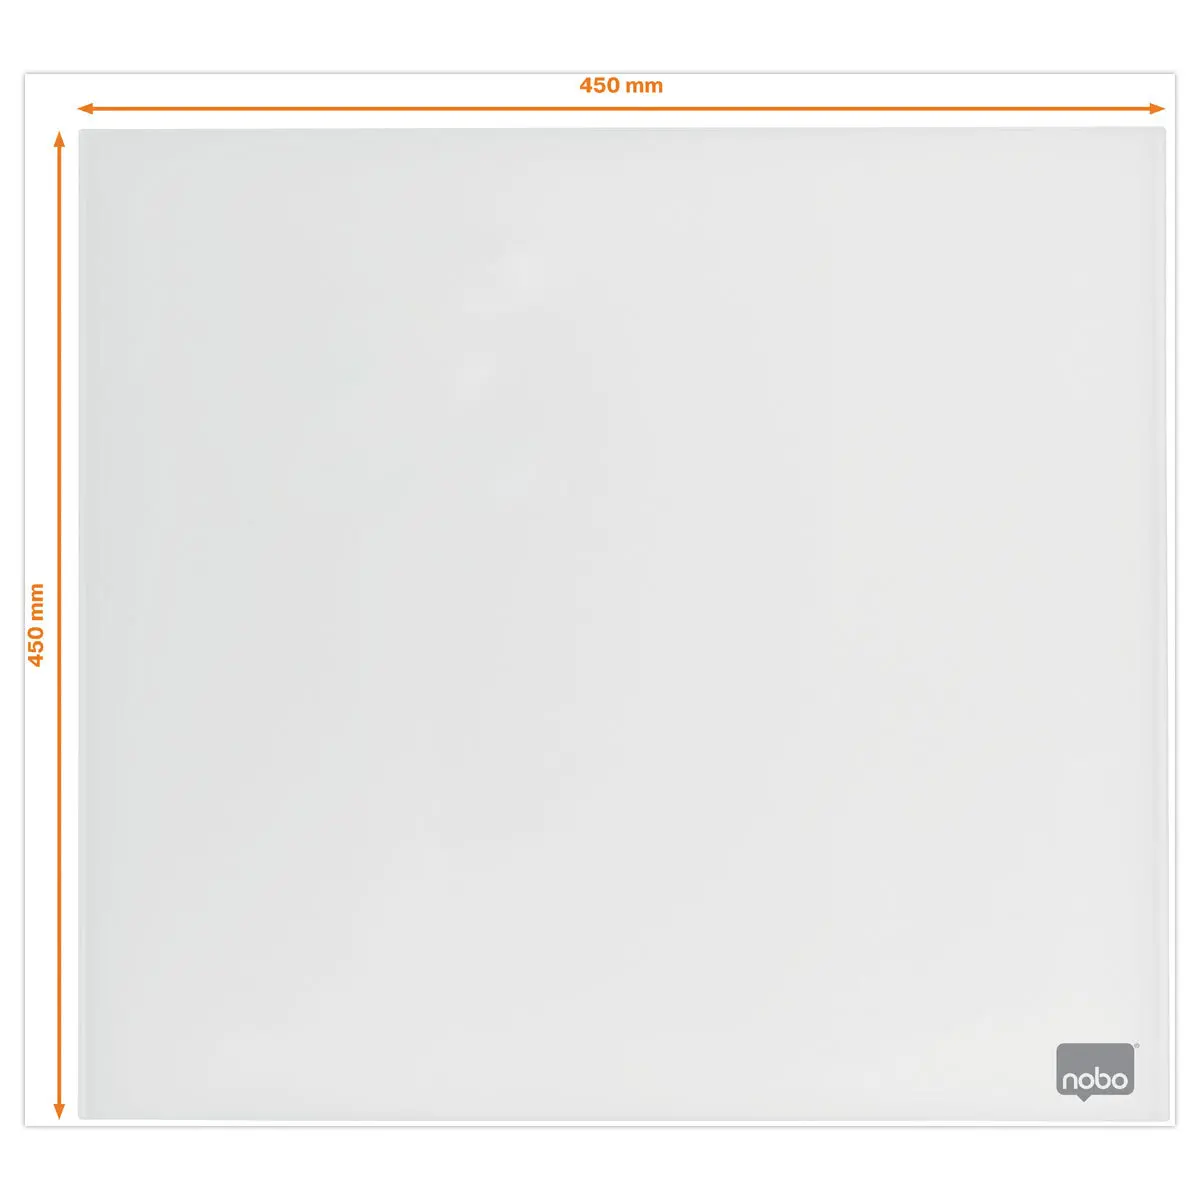 Tableau blanc en verre magnétique - 45 x 45 cm - NOBO photo du produit